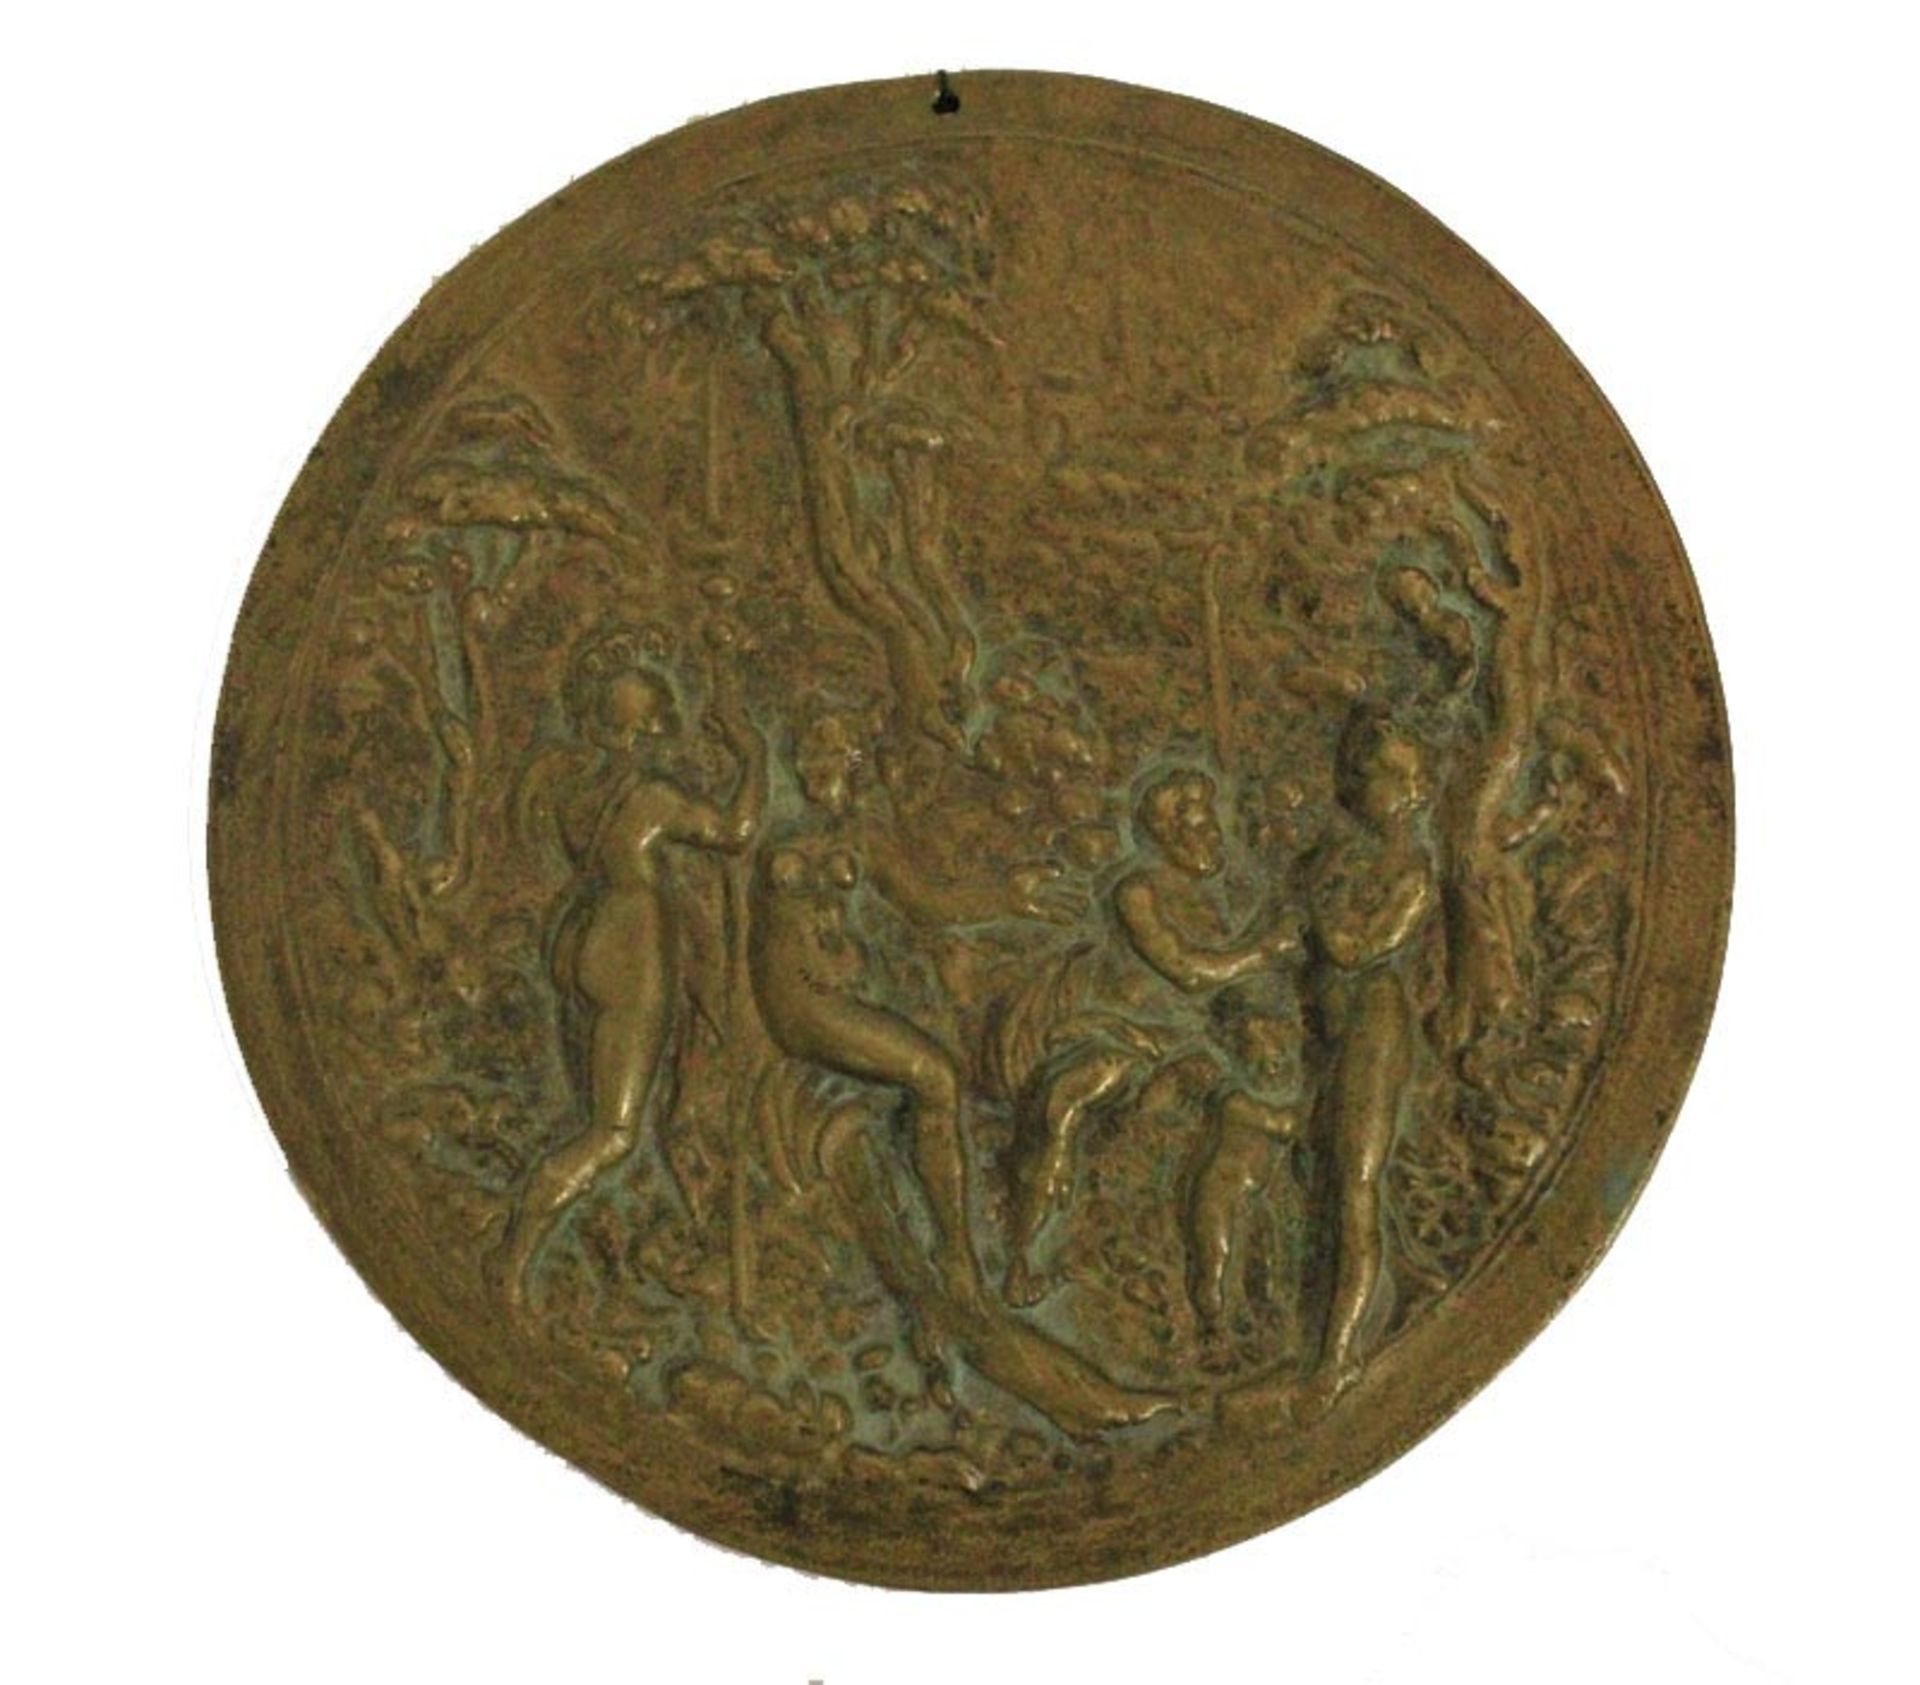 ITALIAN SCHOOL 17th CENTURY Placa en bronce trabajado, 13 cm. diám. Representación de escena